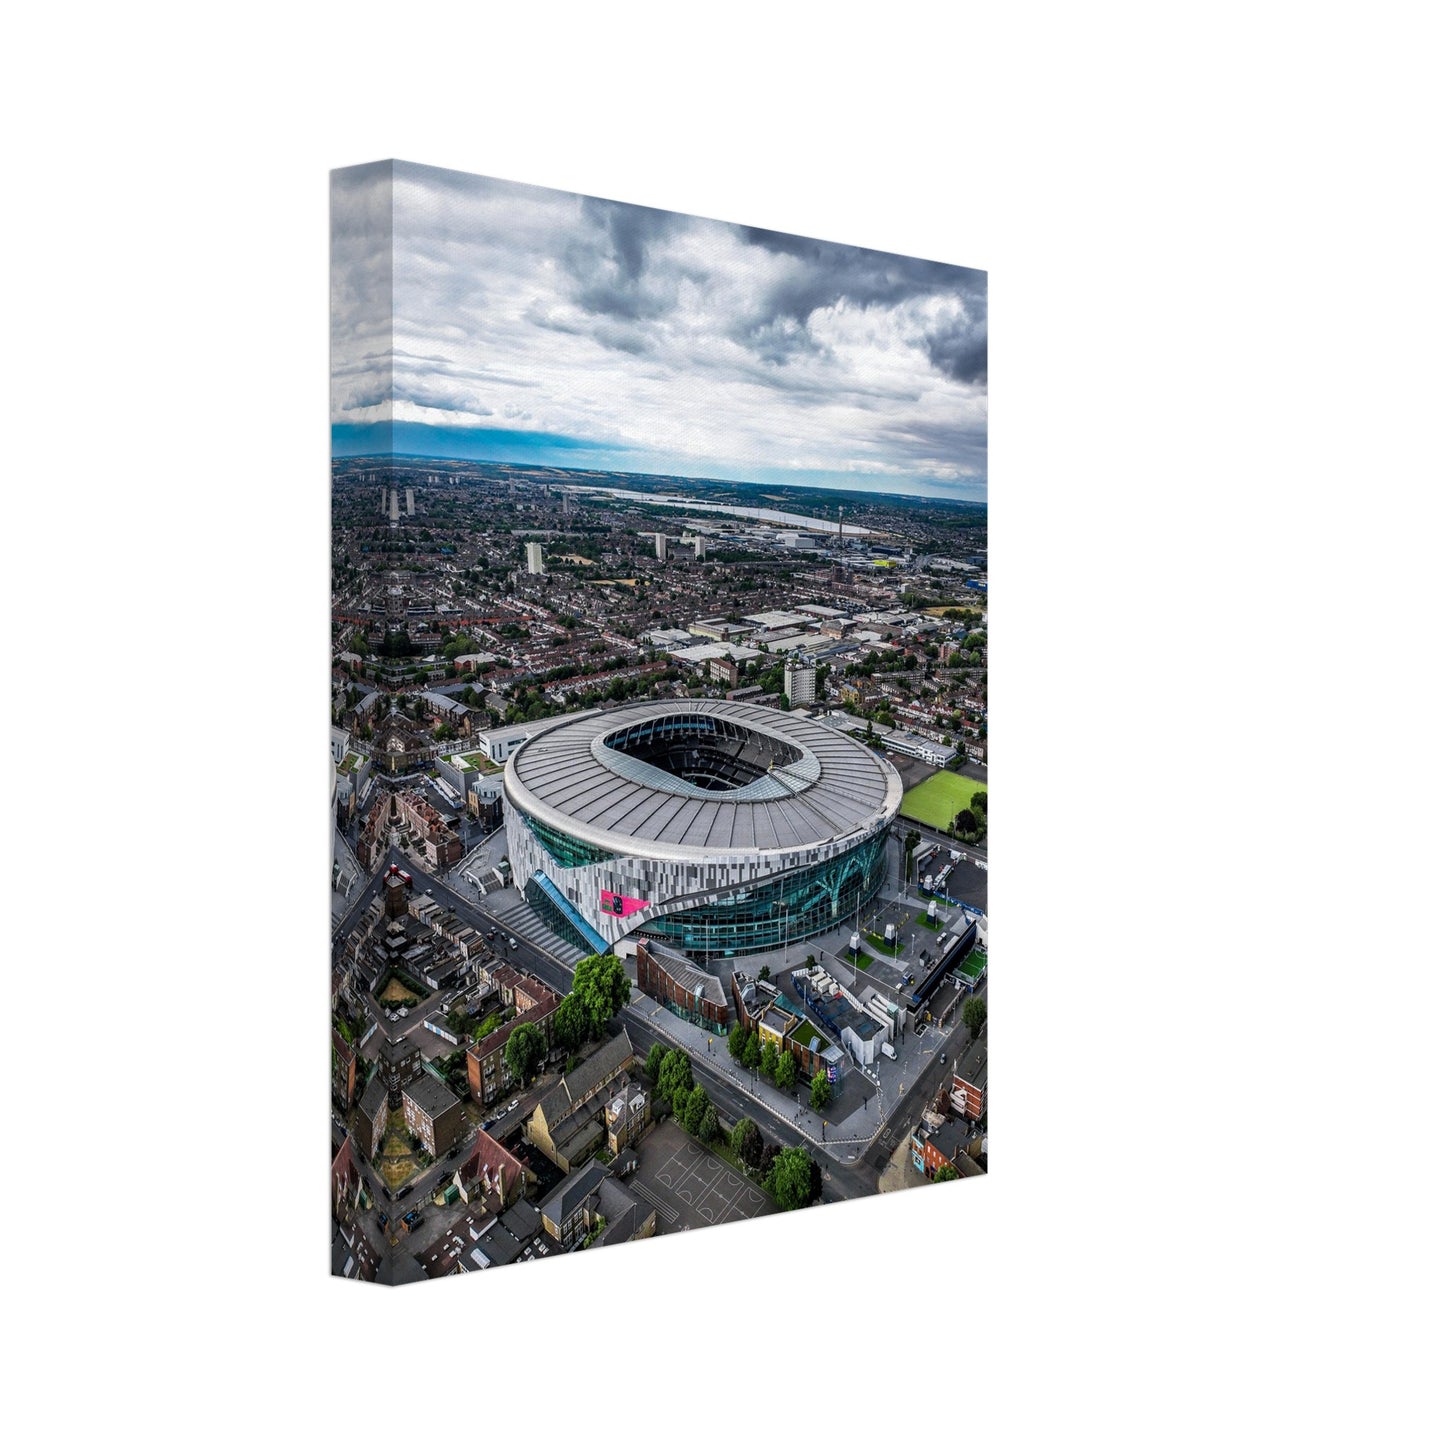 Tottenham Hotspur Stadium Canvas